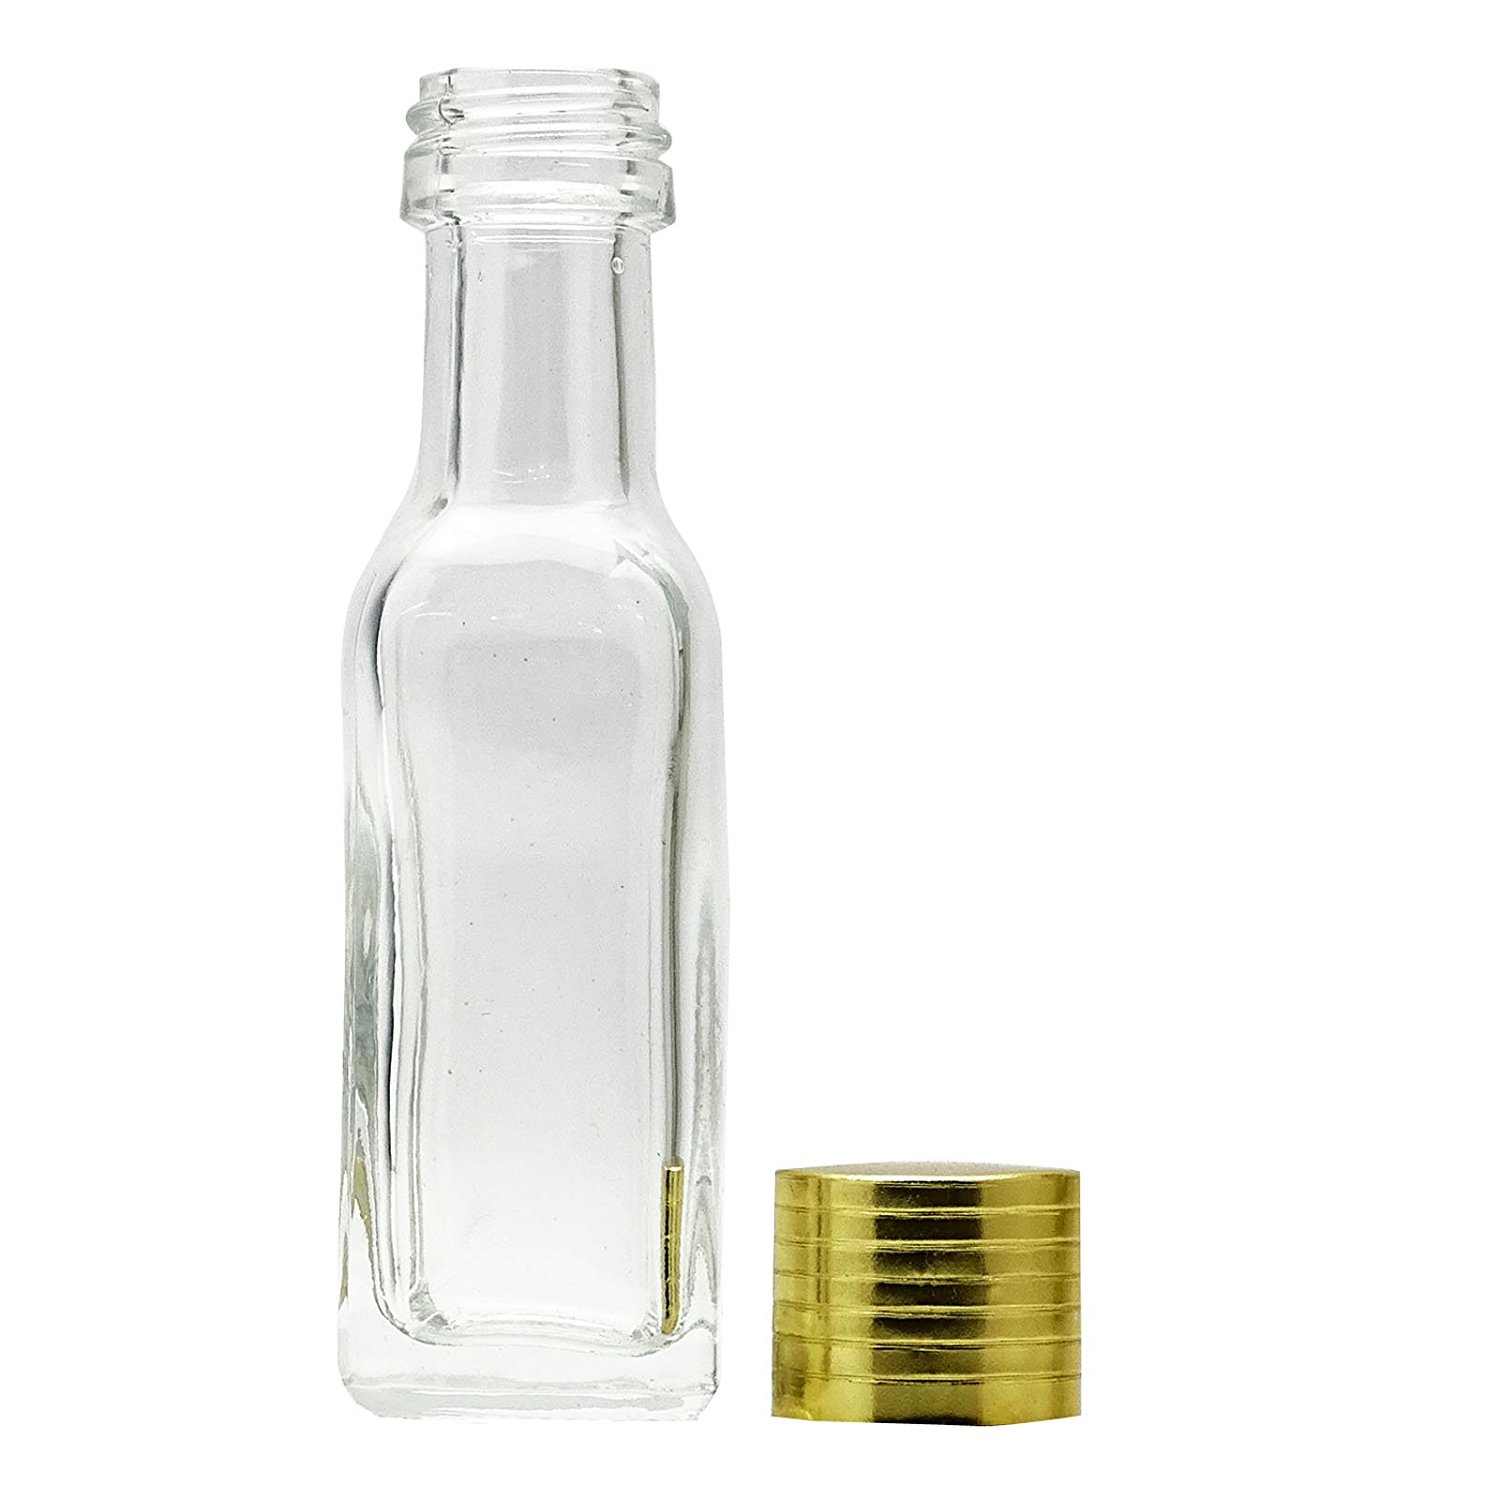 Amazon.com : 6 Pcs Refillable Wholesale Empty Tequila Bottles Clear ...